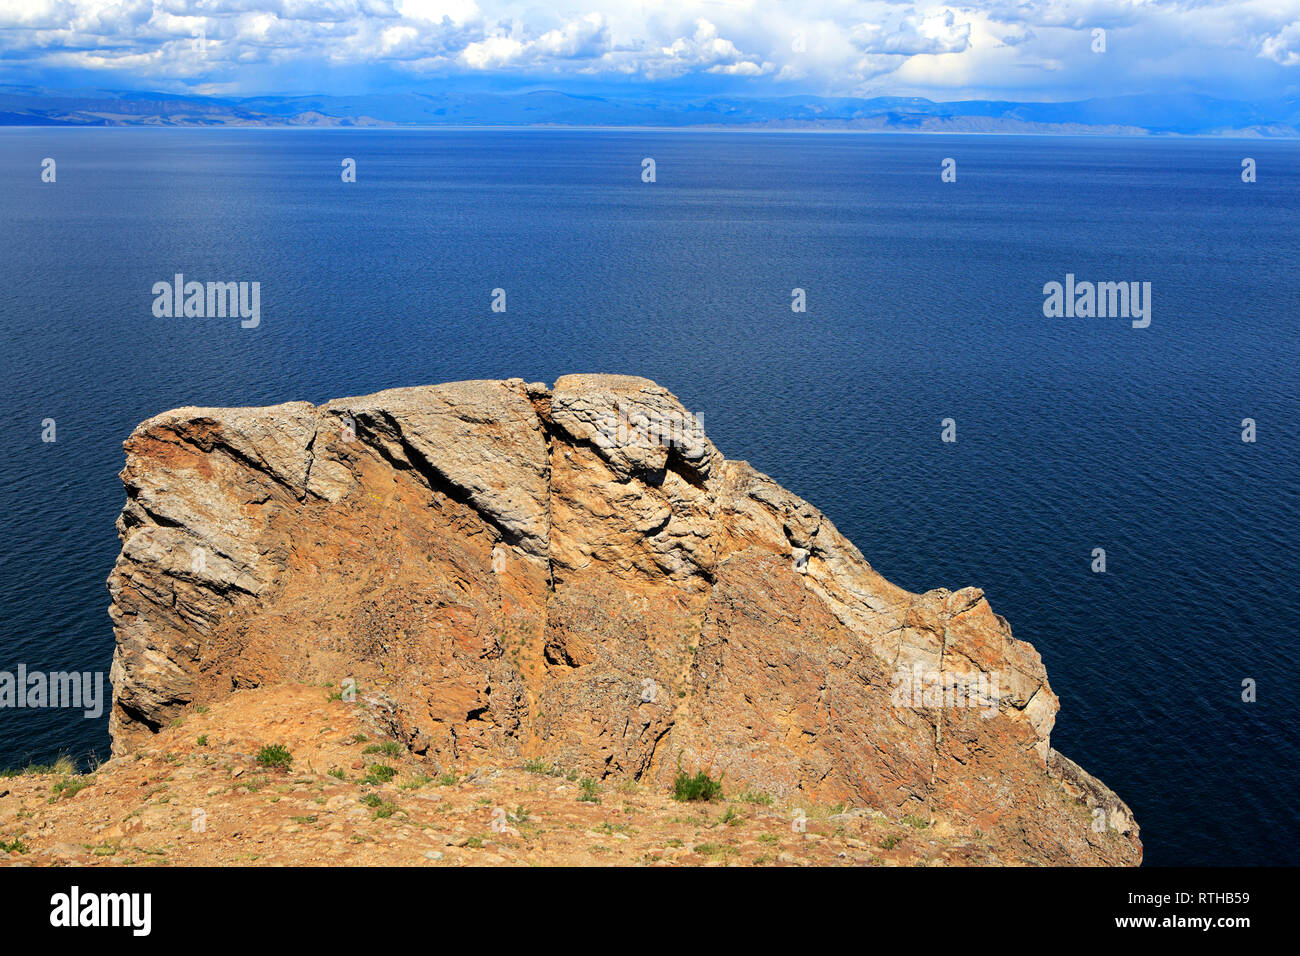 Olkhon island, Khoboy cape, Baikal lake, Russia Stock Photo